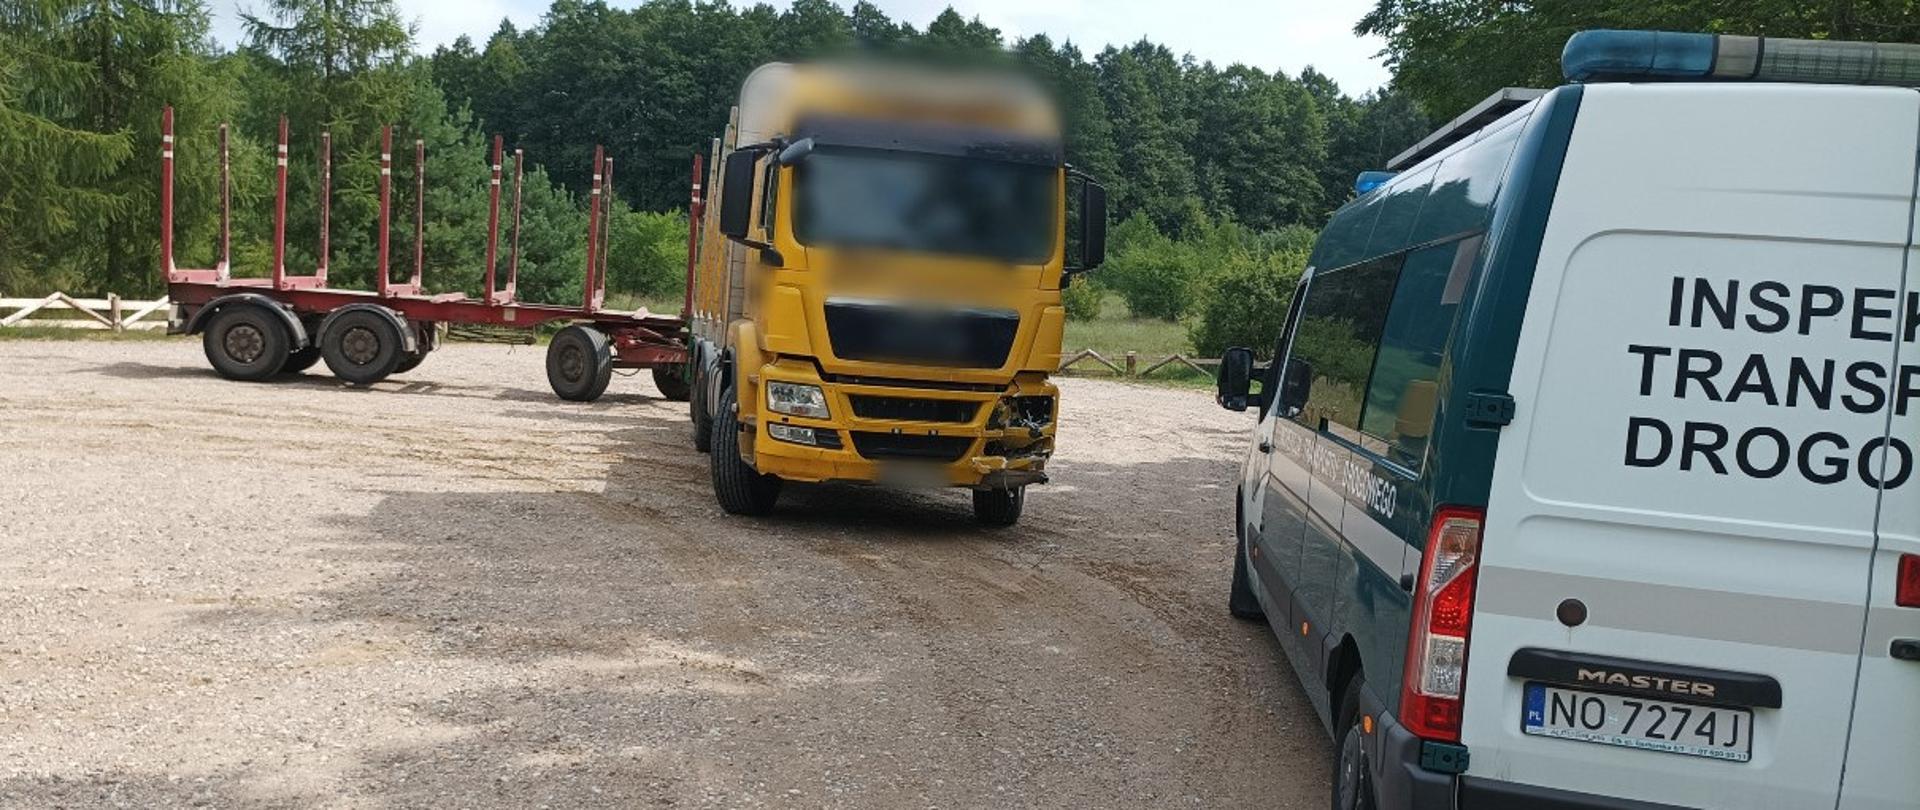 Patrol warmińsko-mazurskiej Inspekcji Transportu Drogowego na miejscu wypadku z udziałem ciężarówki.